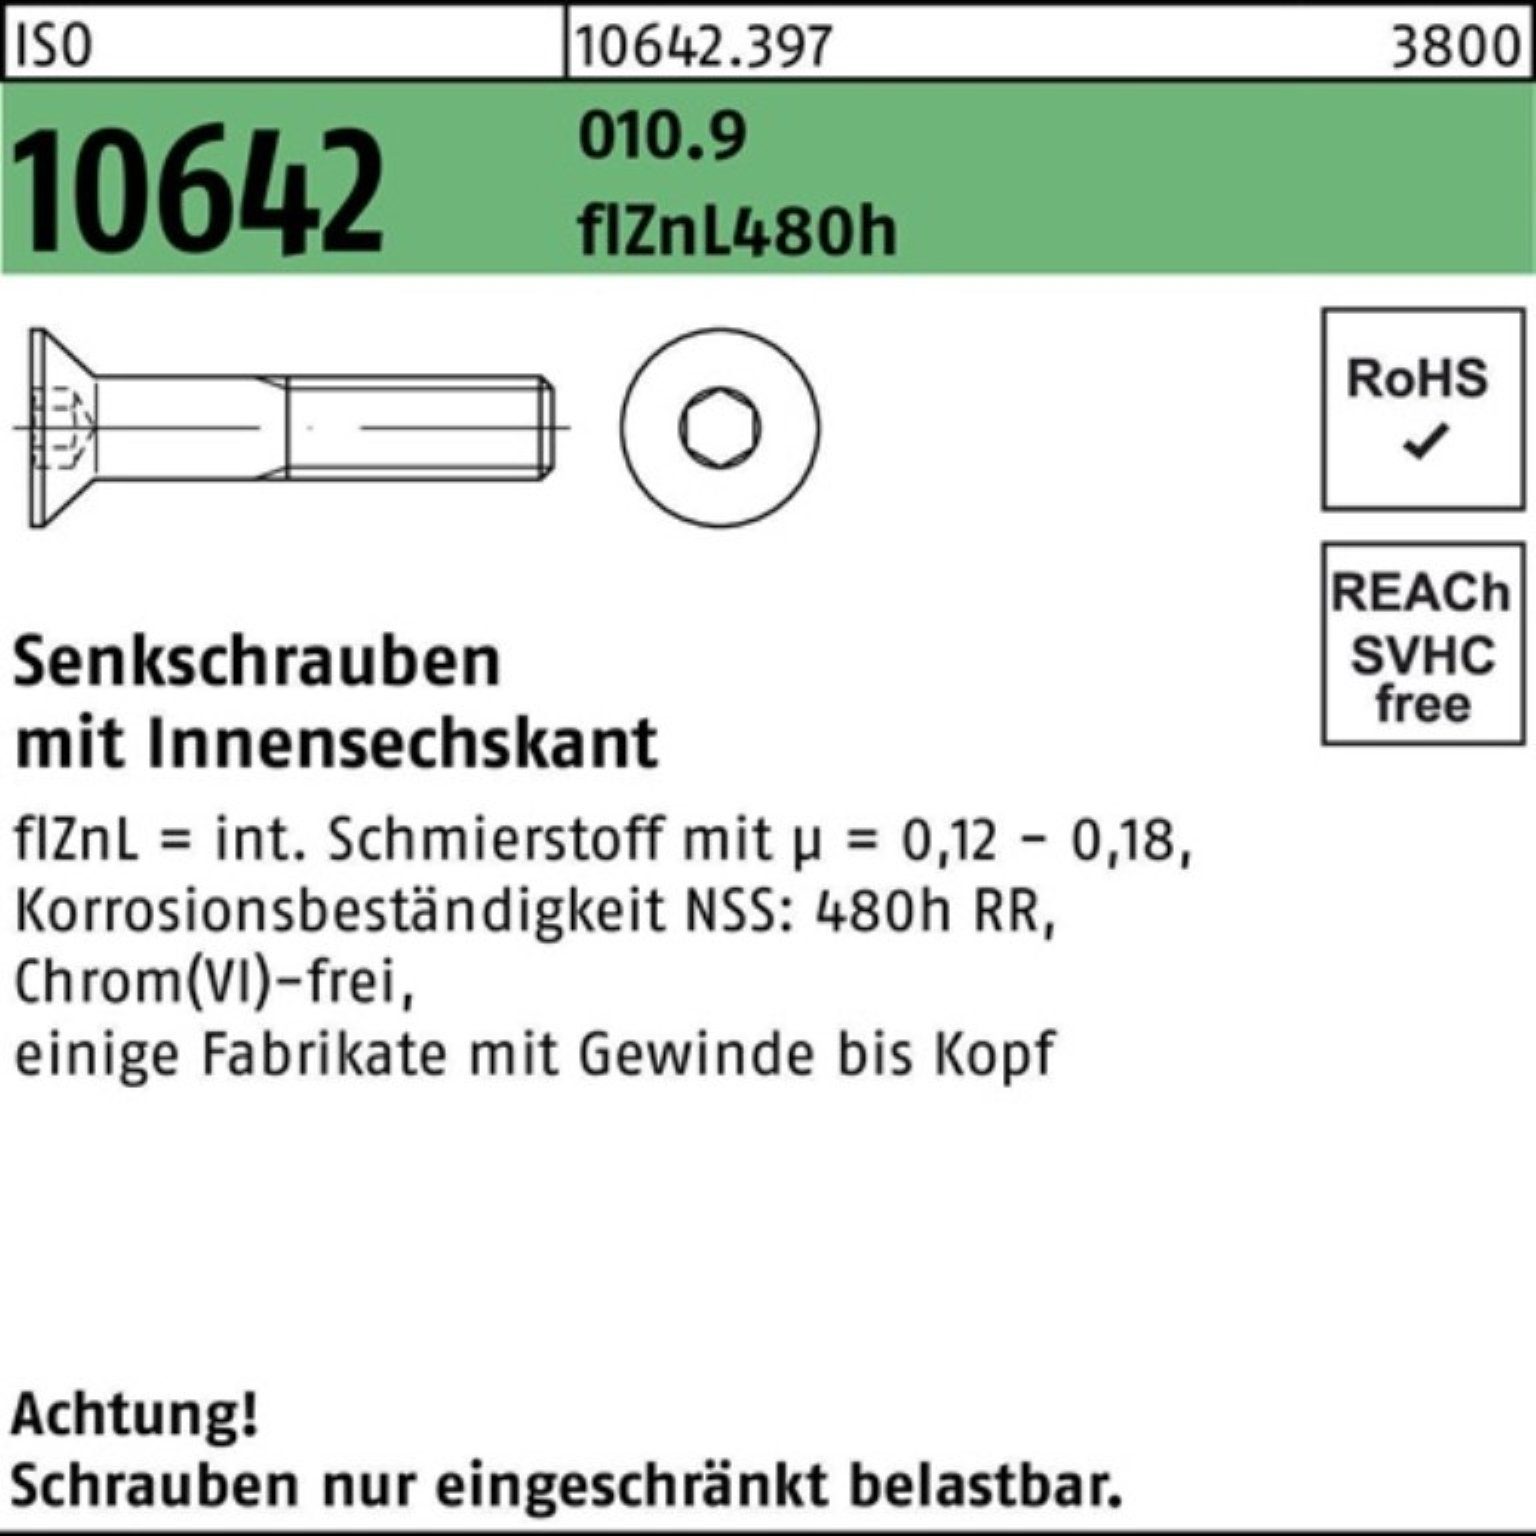 Senkschraube M12x70 Reyher 100er ISO Innen-6kt 10642 flZnL 010.9 zi Senkschraube Pack 480h